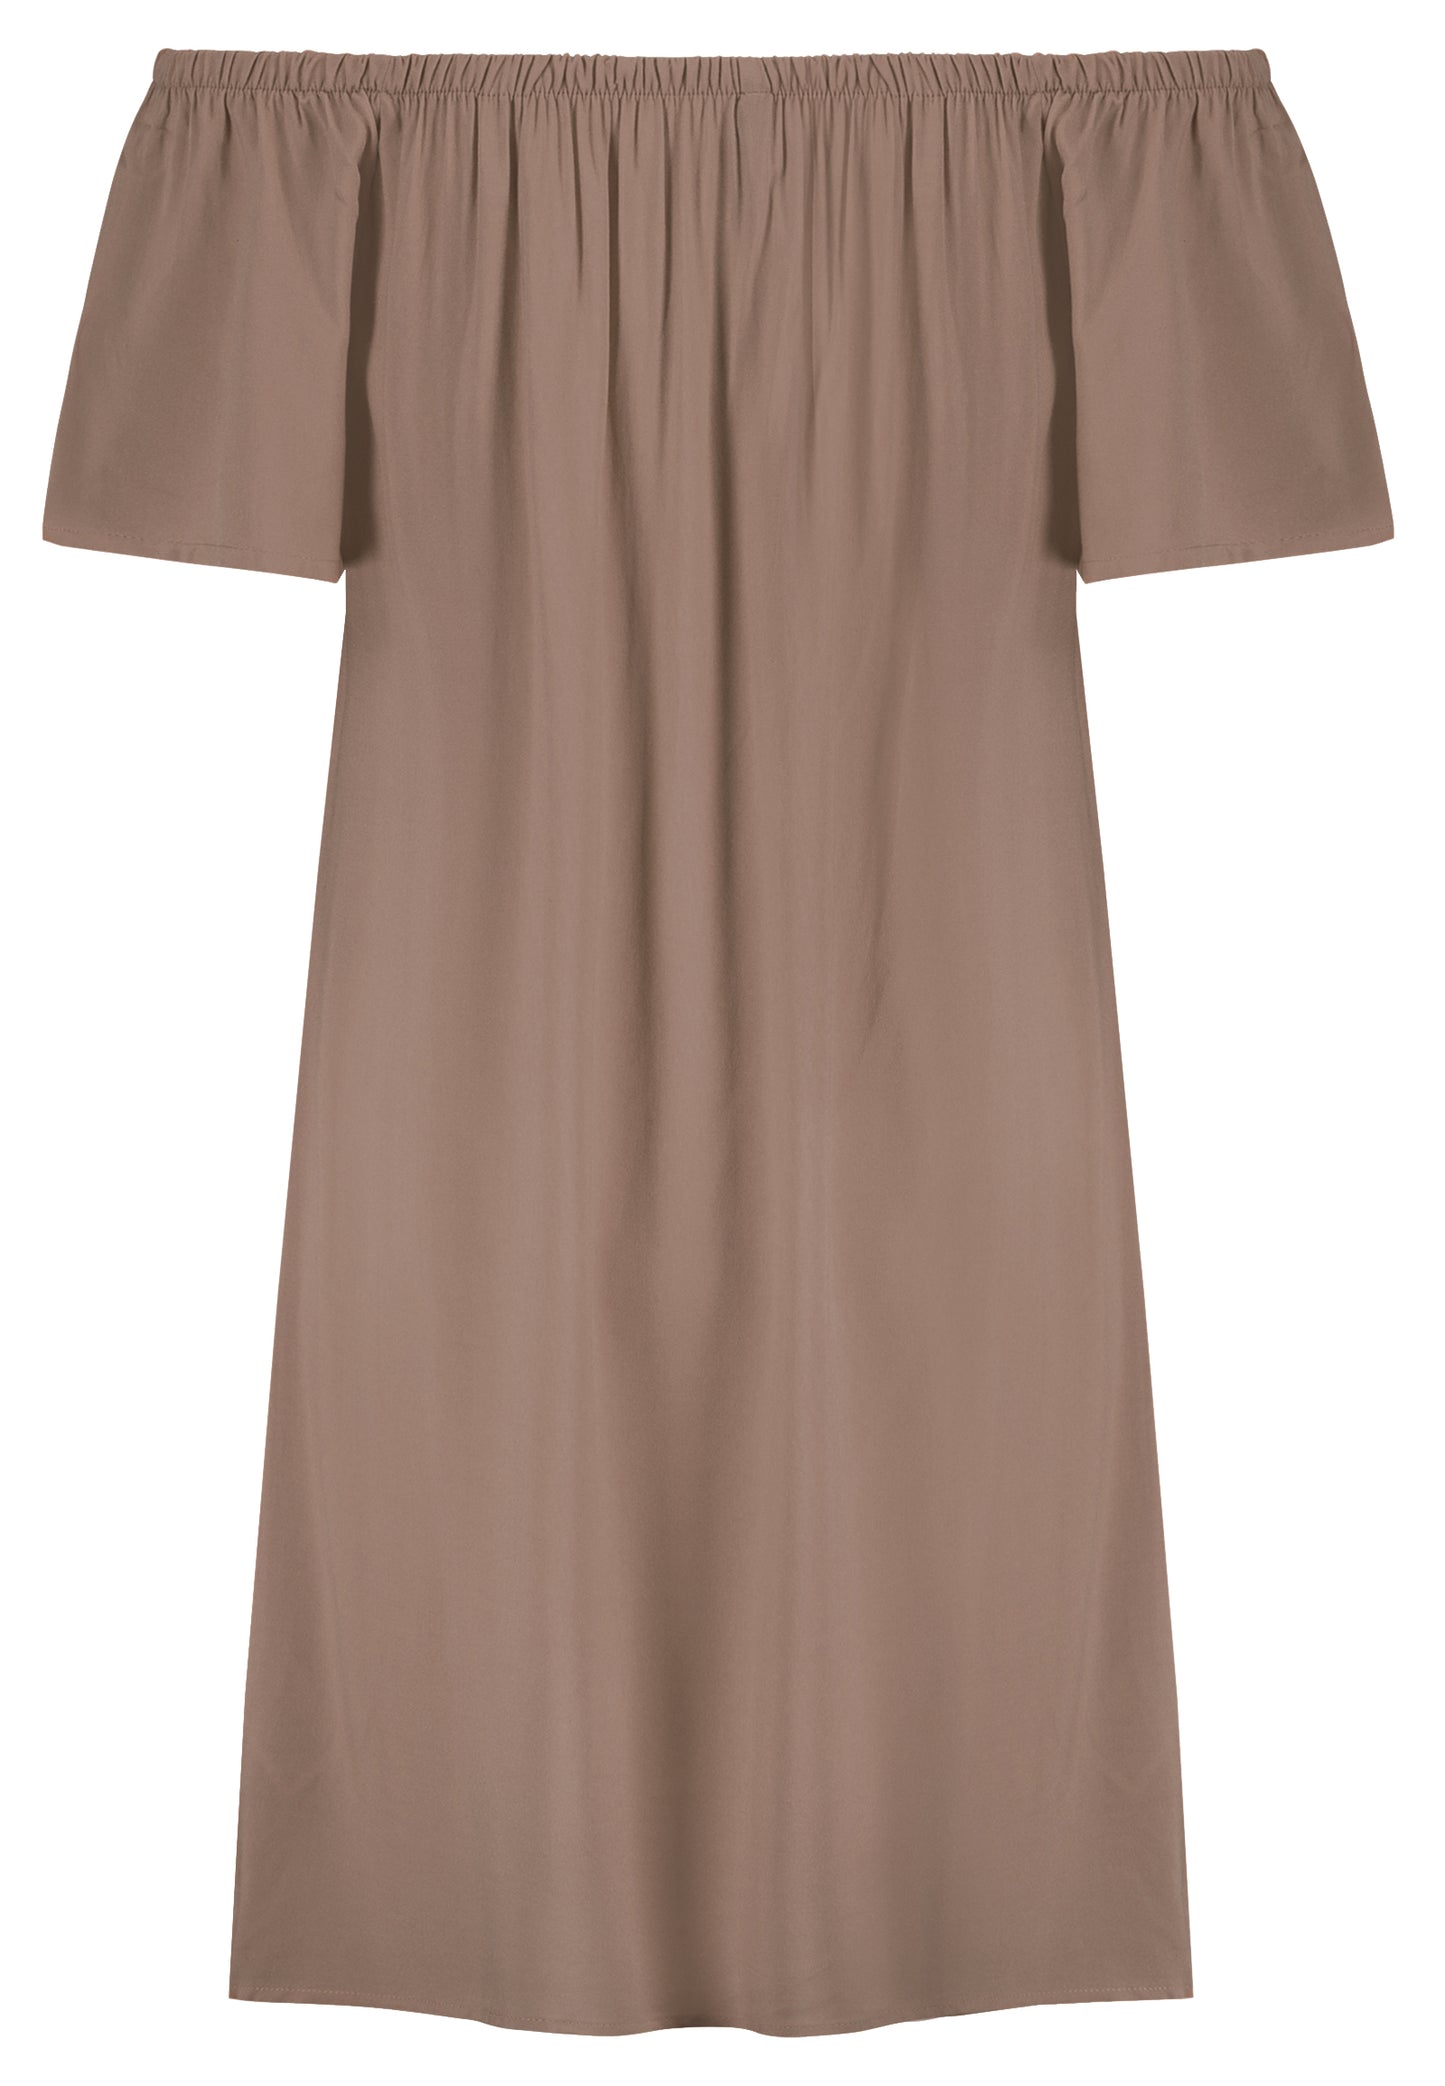 Kleid, Carmen-Ausschnitt mit Gummizug, kurze Ärmel